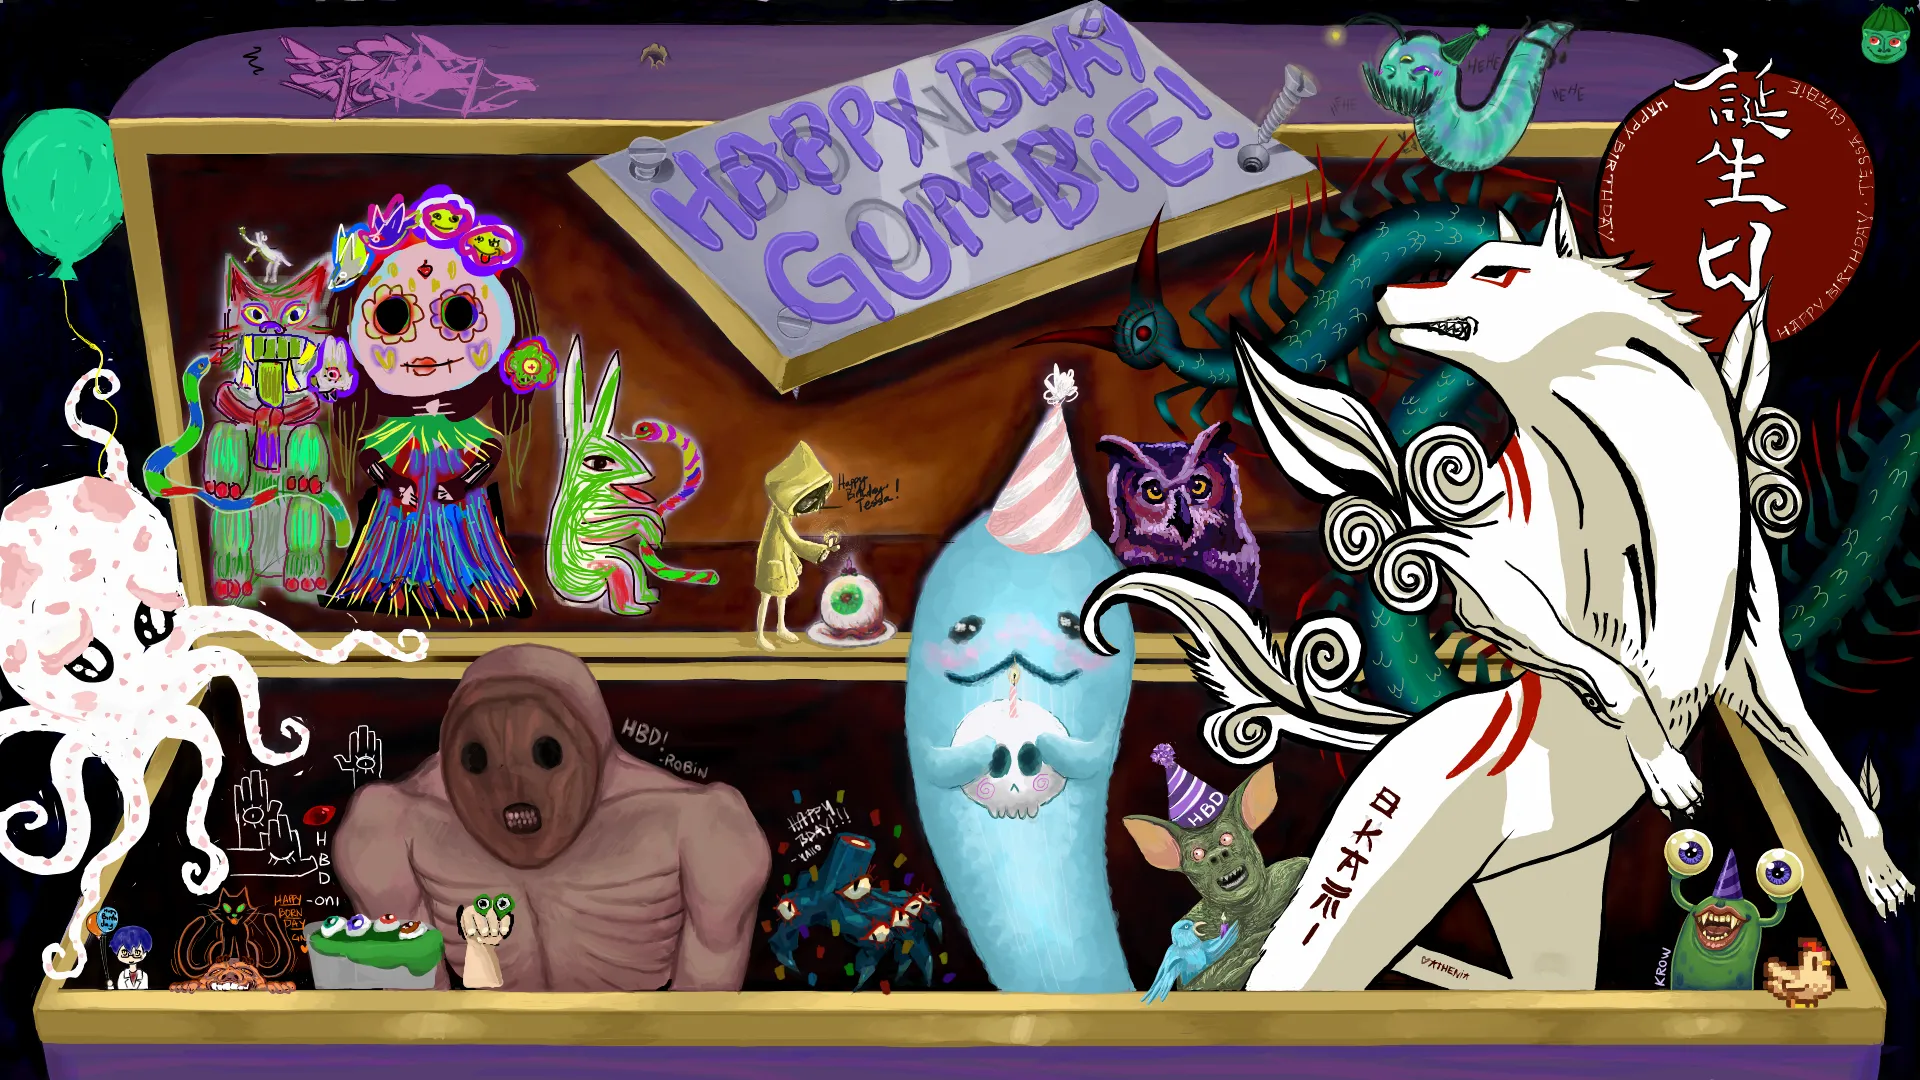 Gumbie's Spooky Birthday!